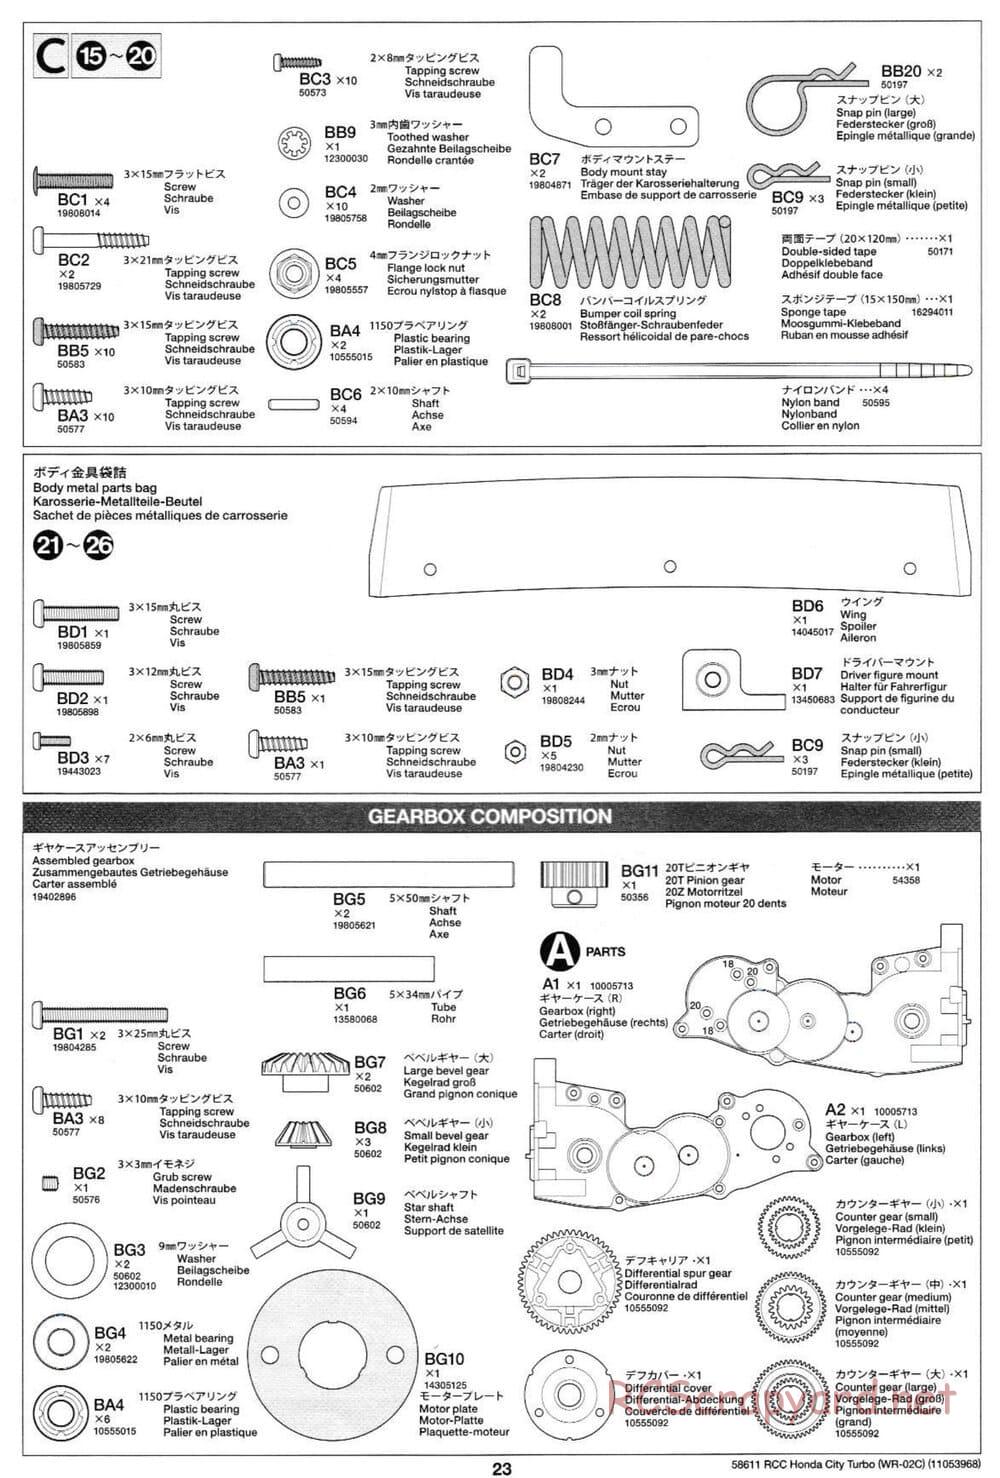 Tamiya - Honda City Turbo - WR-02C Chassis - Manual - Page 23